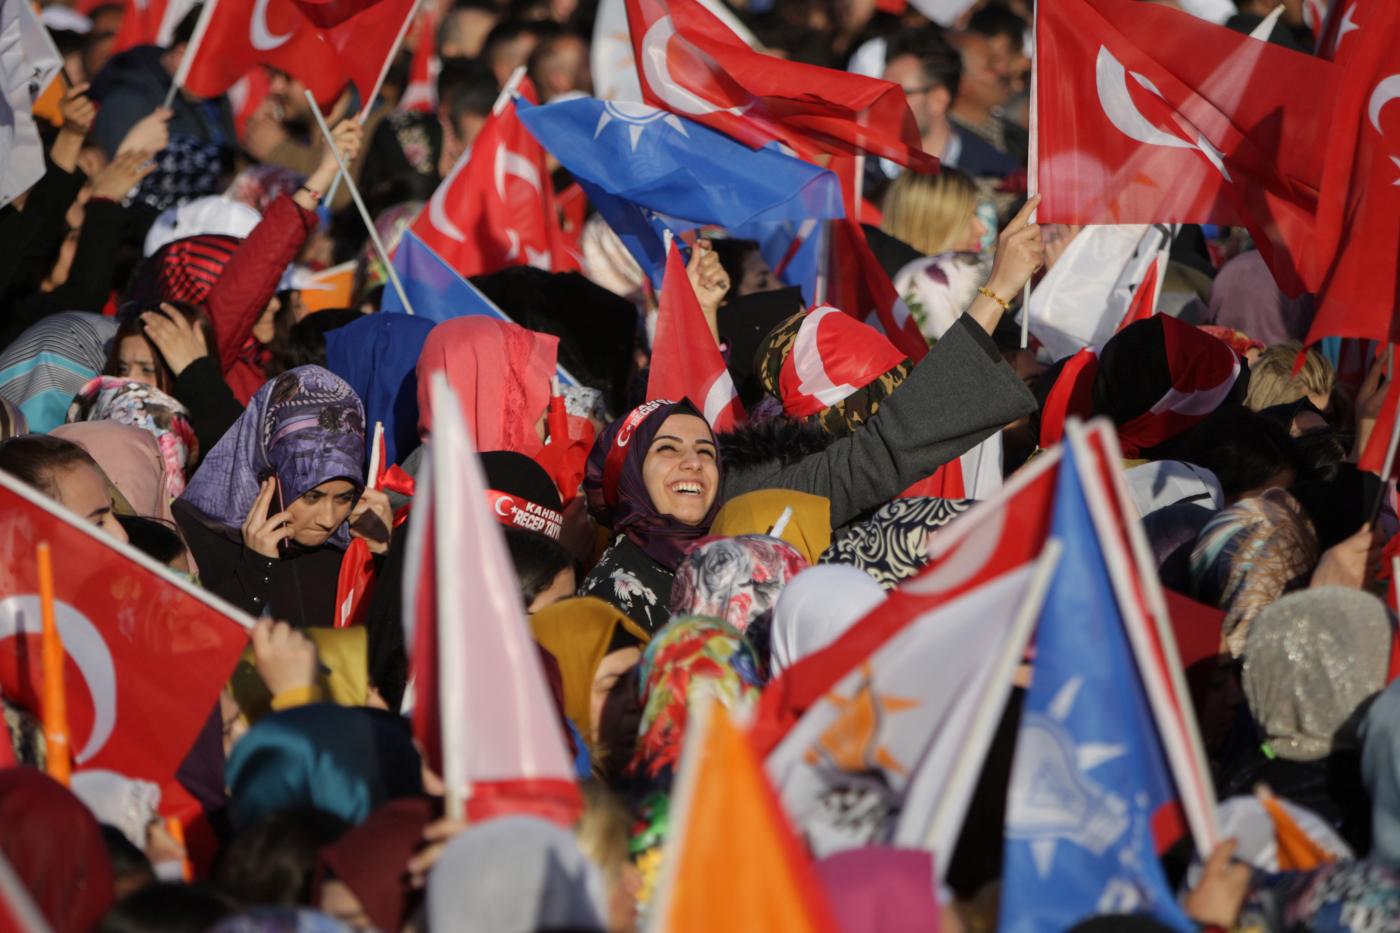 Des partisans de l’AKP assistent à un discours prononcé par Recep Tayyip Erdoğan à Diyarbakır le 9 mars (Reuters)